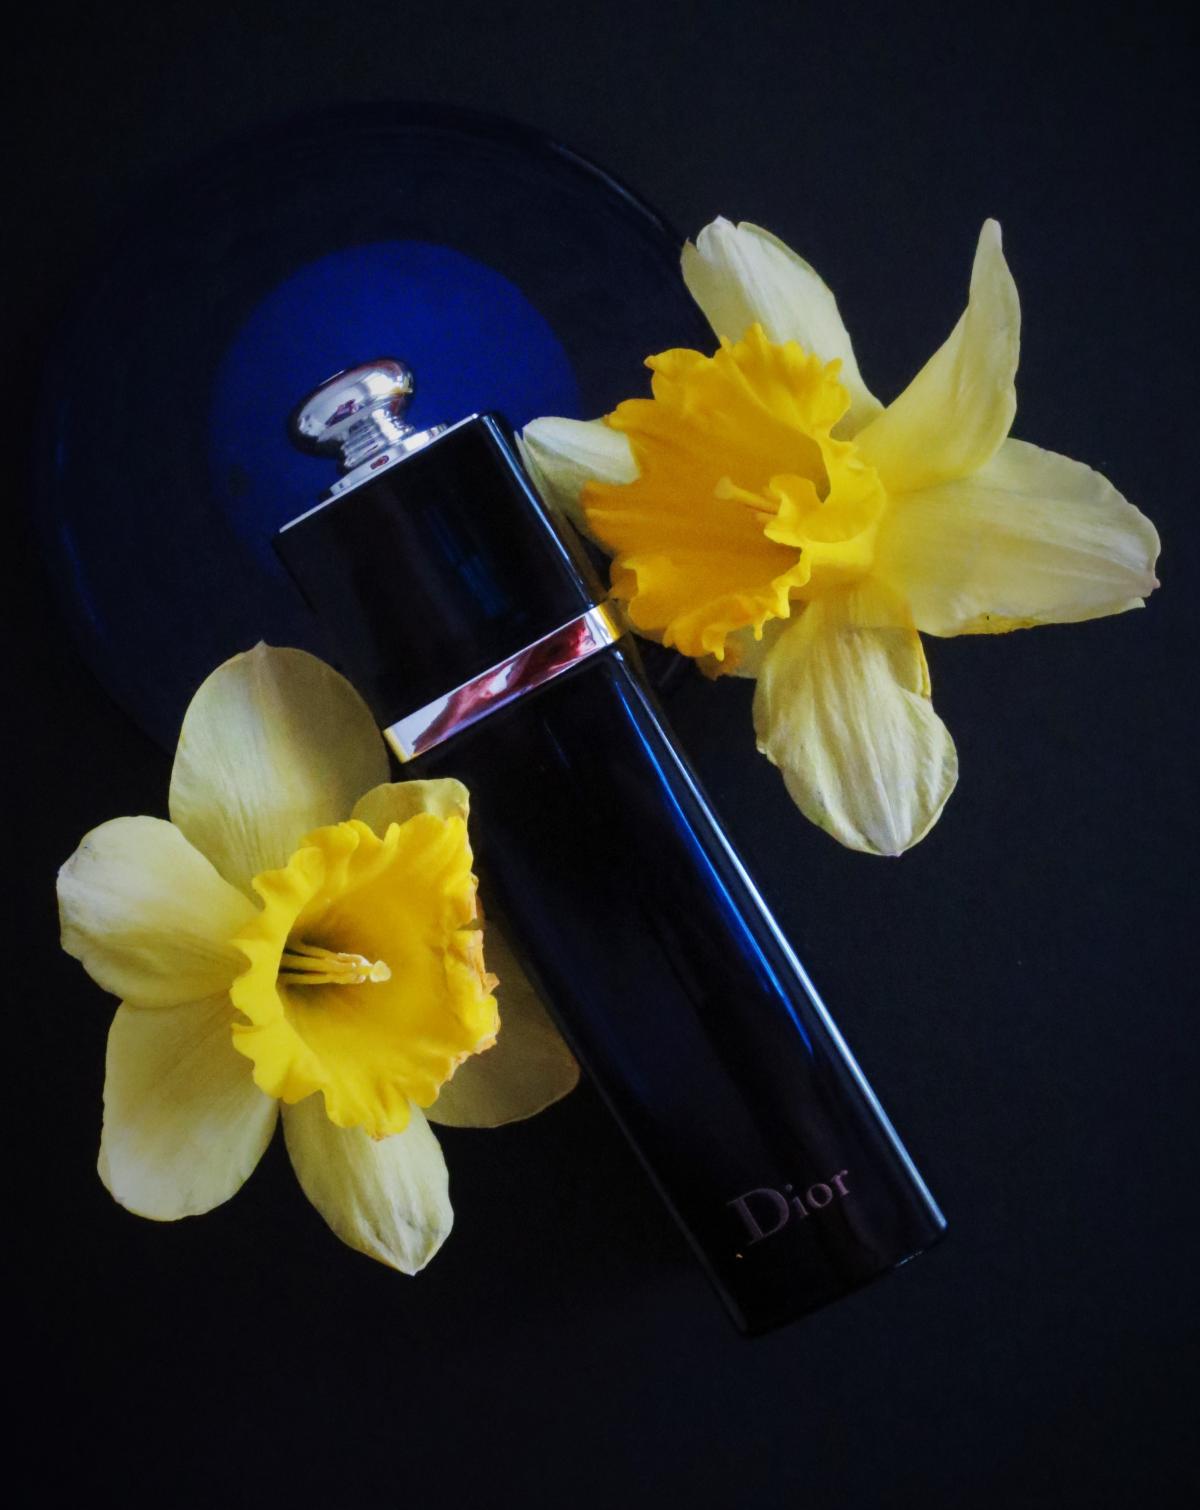 Dior Addict Eau de Parfum (2014) Dior 香水 - 一款 2014年 女用 香水